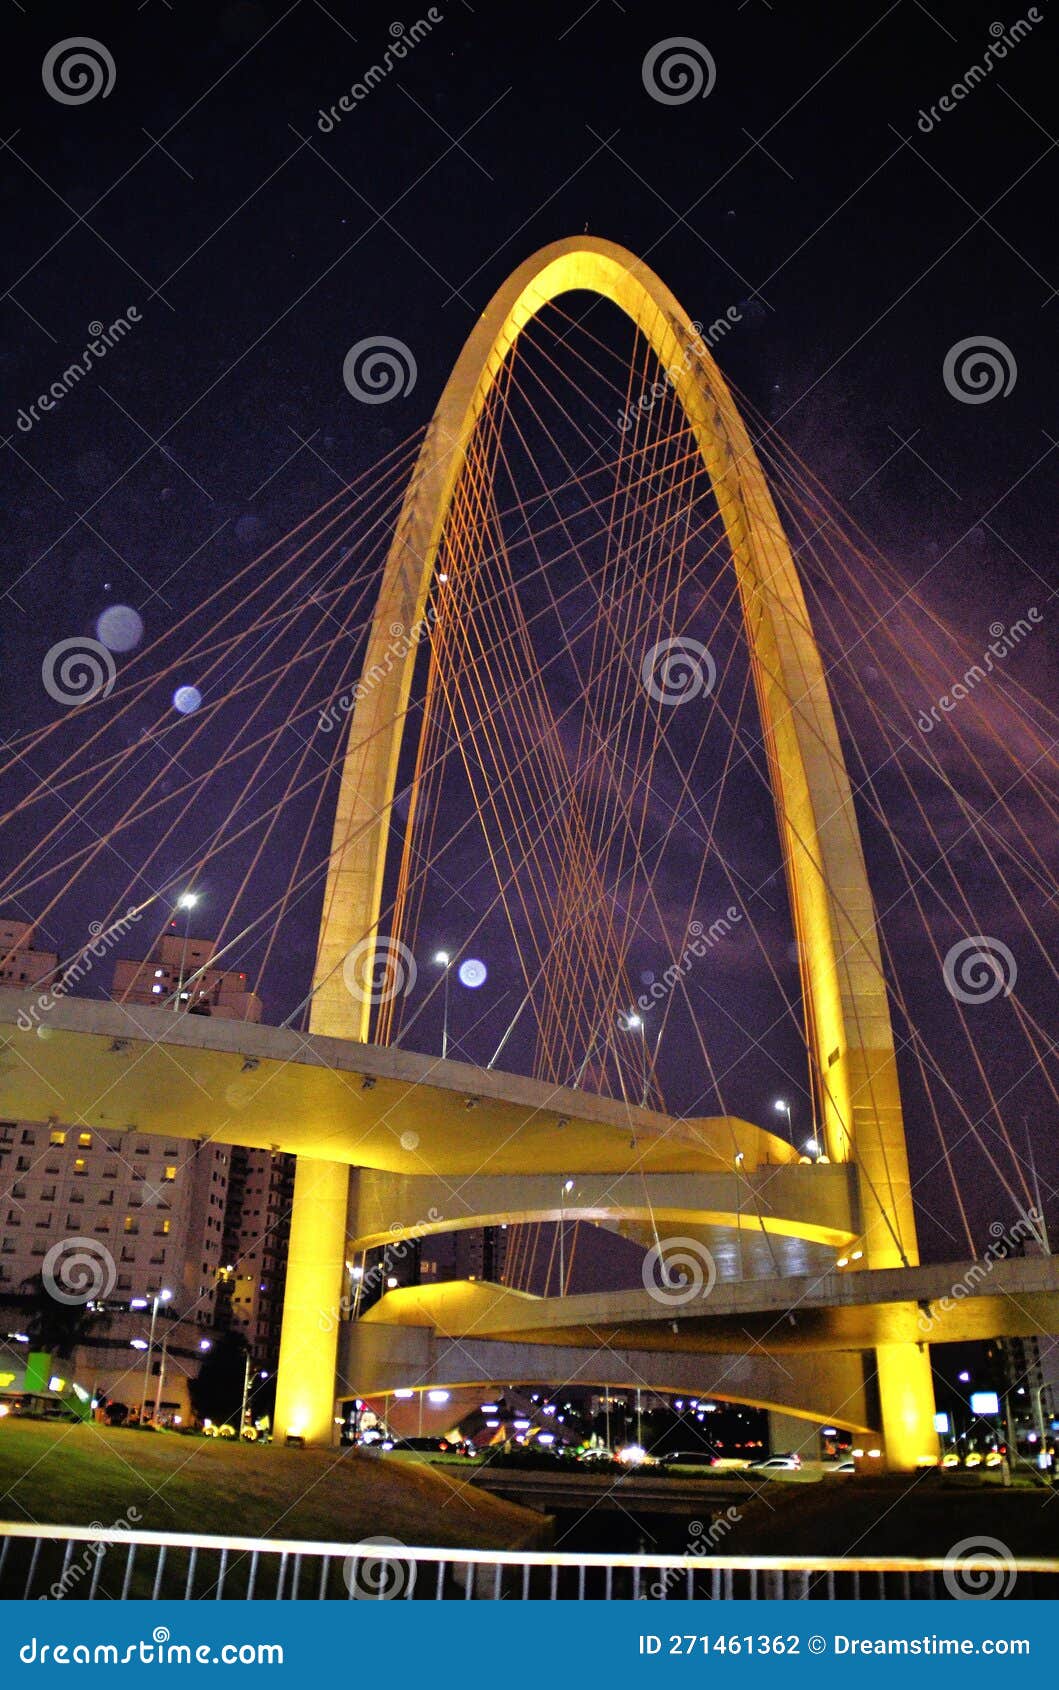 the beautiful arco da inovaÃ§Ã£o taiada bridge at night with its lighting